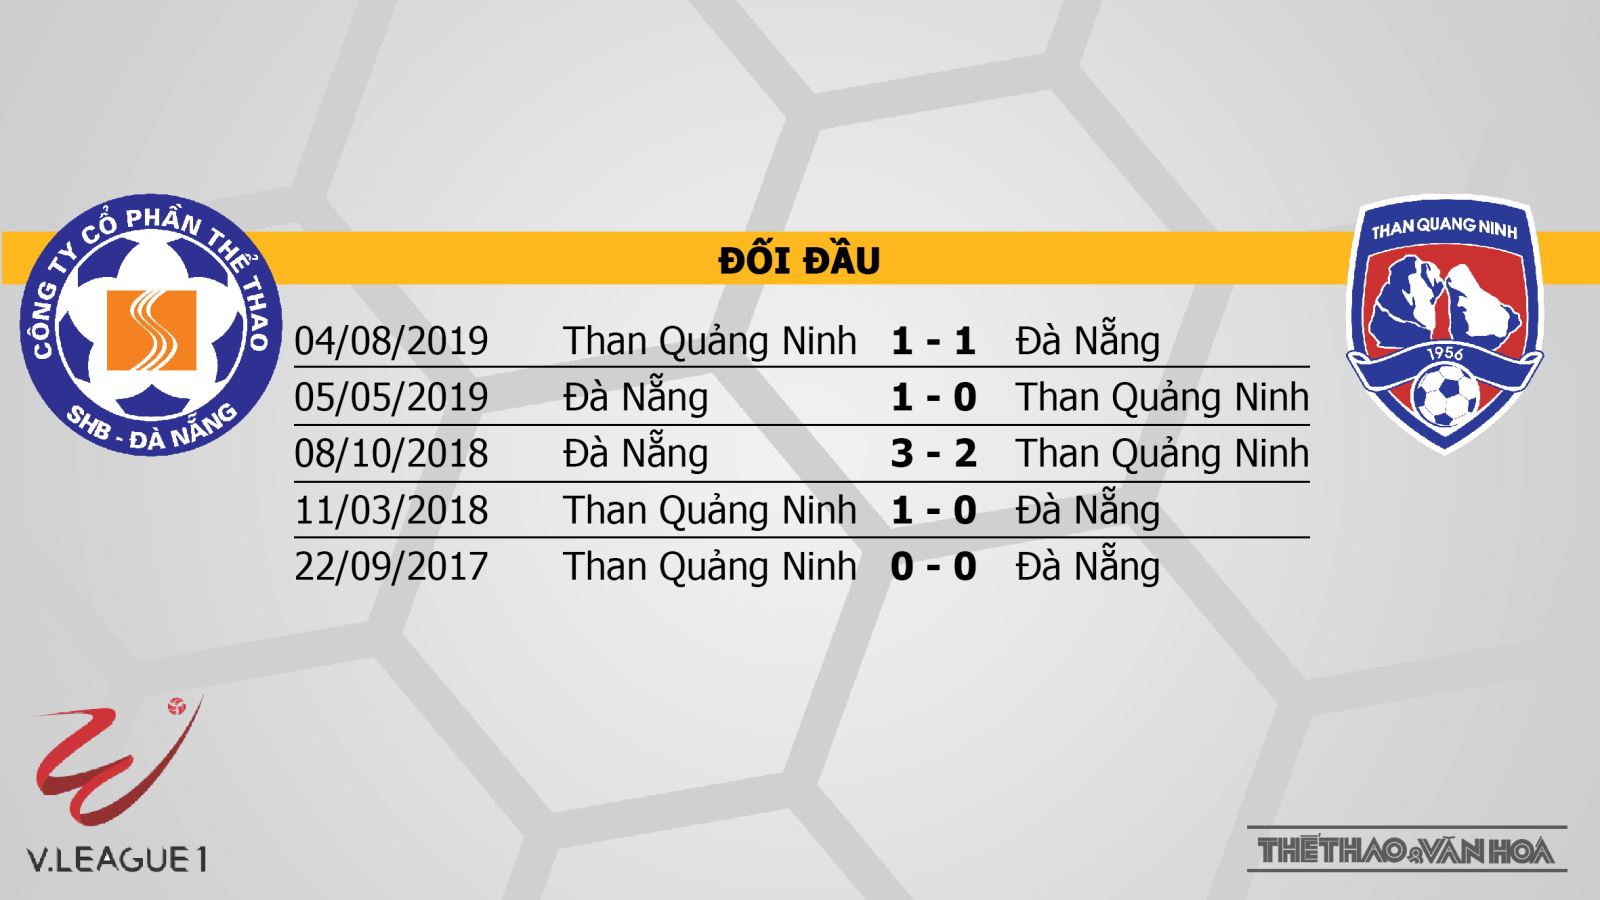 SHB Đà Nẵng vs Than Quảng Ninh, nhận định bóng đá SHB Đà Nẵng vs Than Quảng Ninh, nhận định, dự đoán, kèo bóng đá, nhận định bóng đá, lịch thi đấu bóng đá